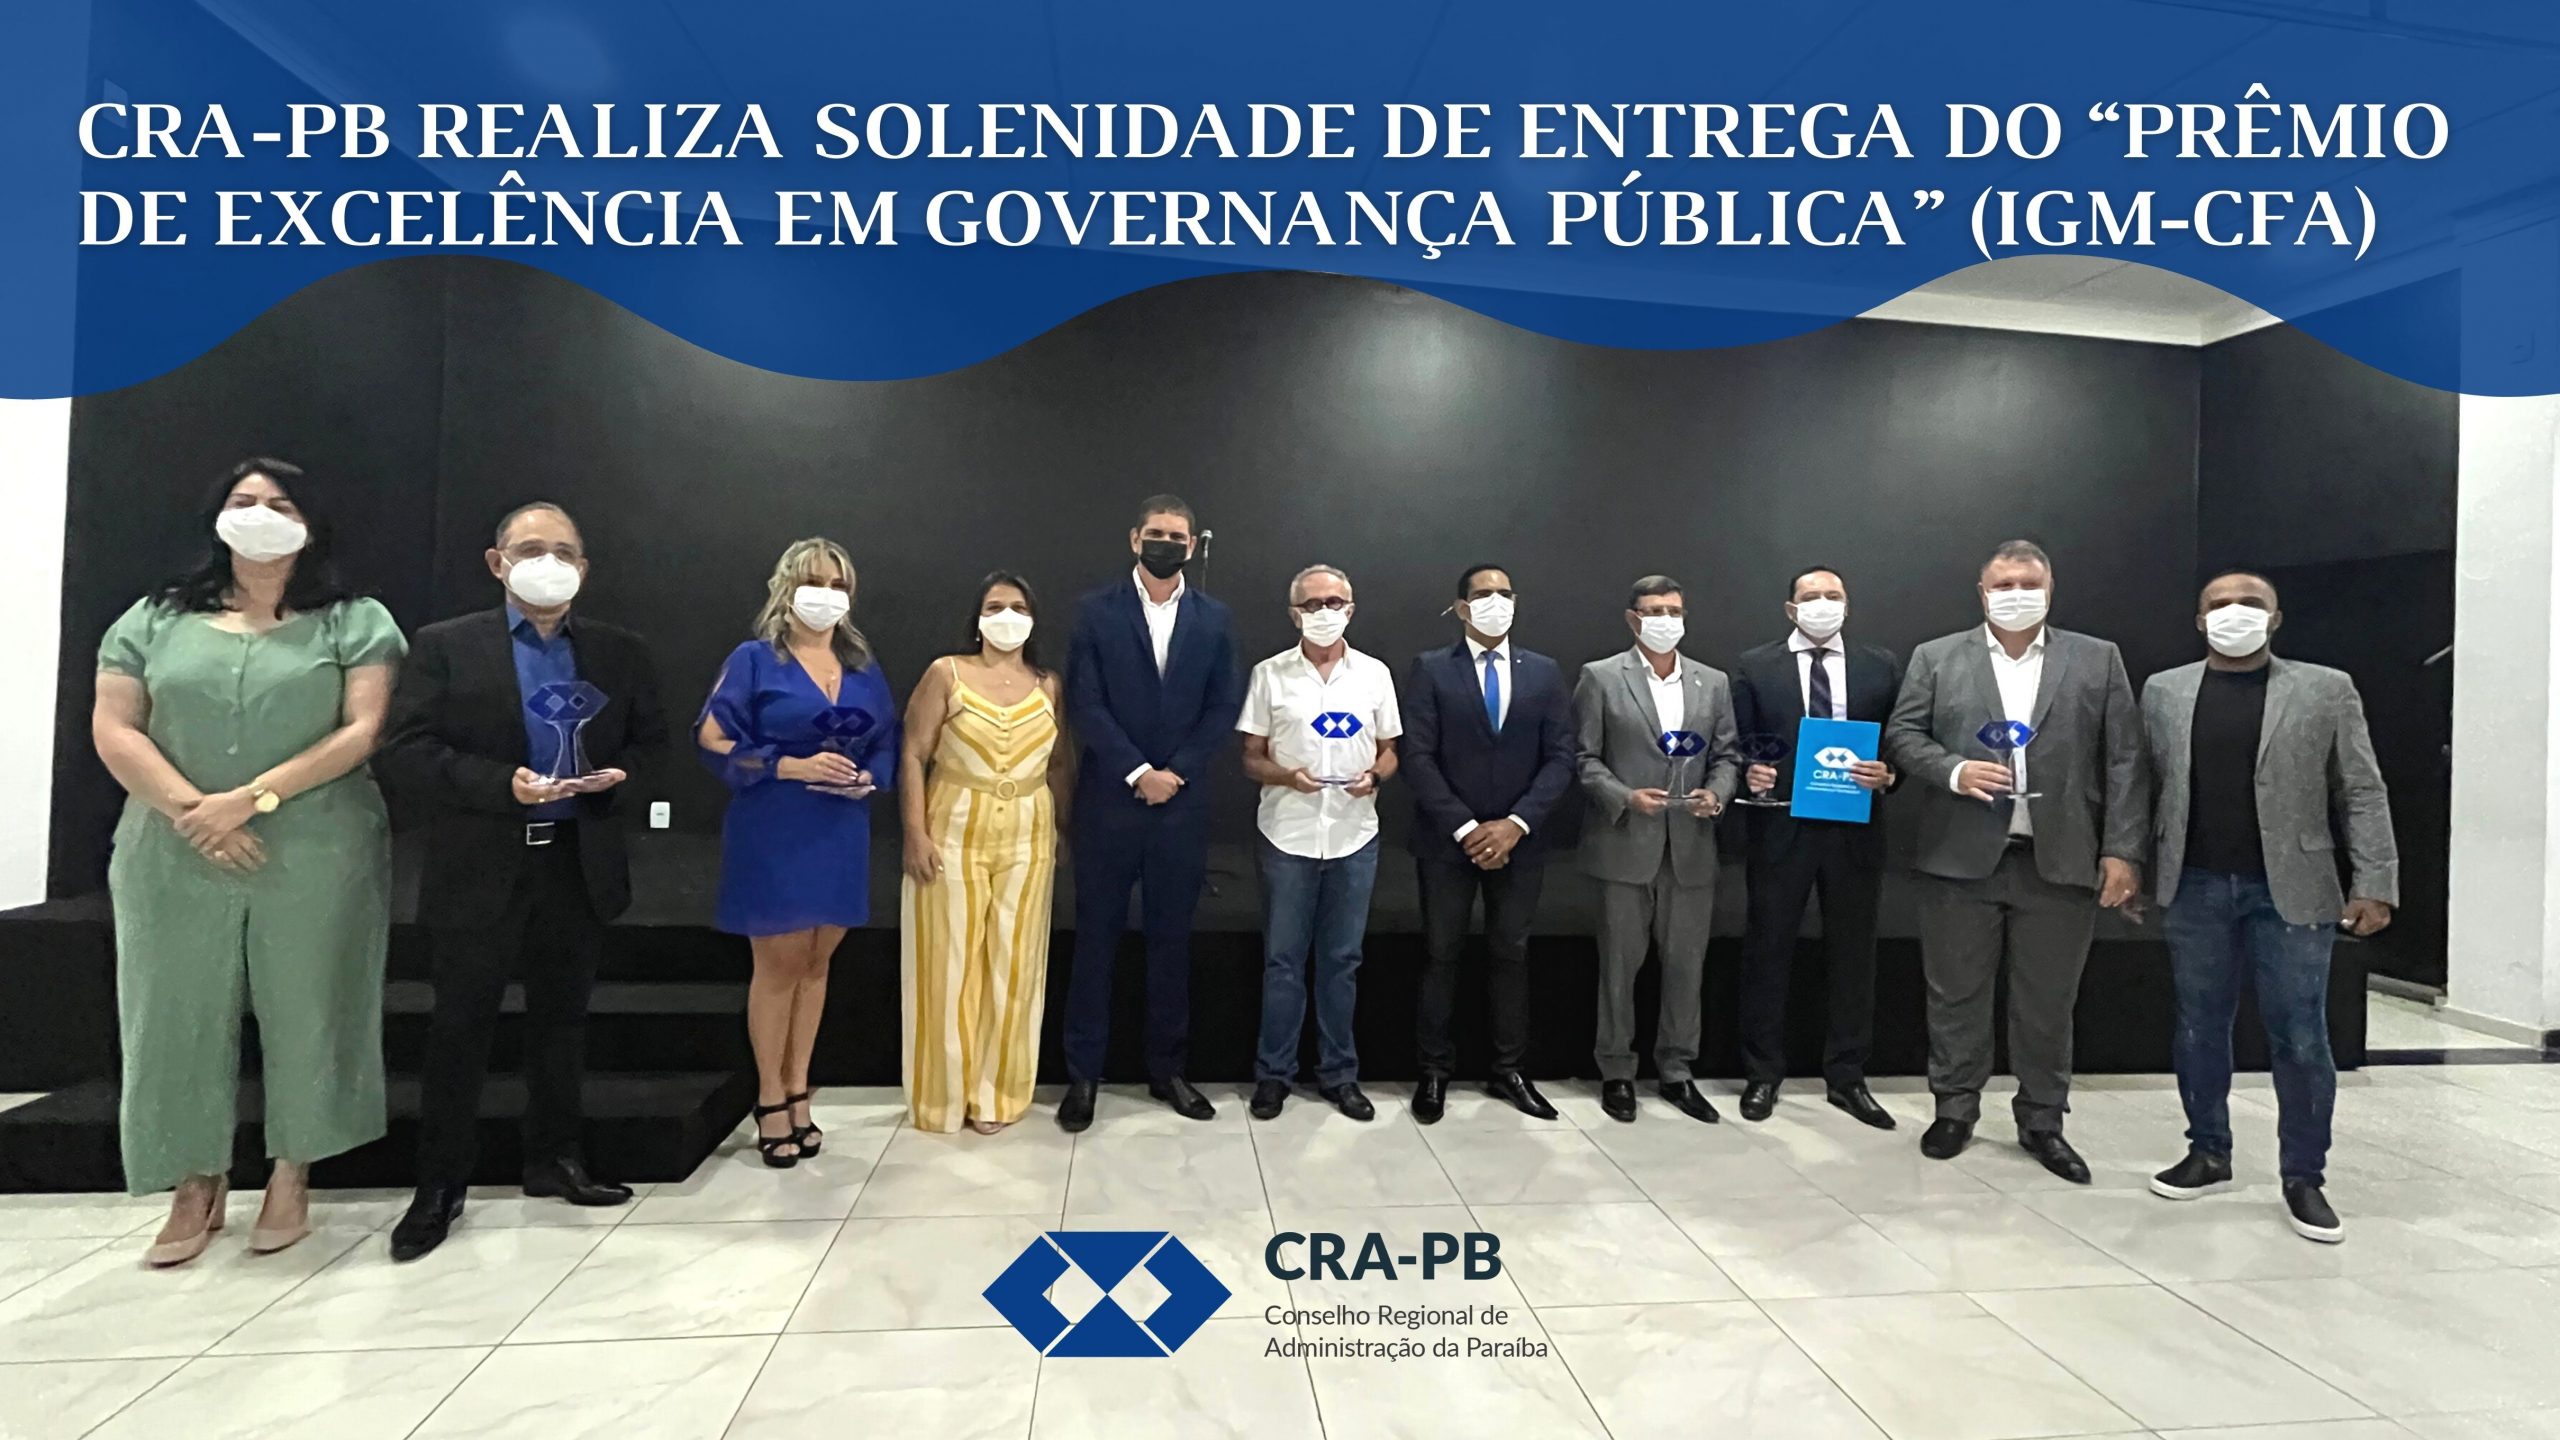 CRA-PB realiza solenidade de entrega do Prêmio de Excelência em Governança Pública” (IGM/CFA)